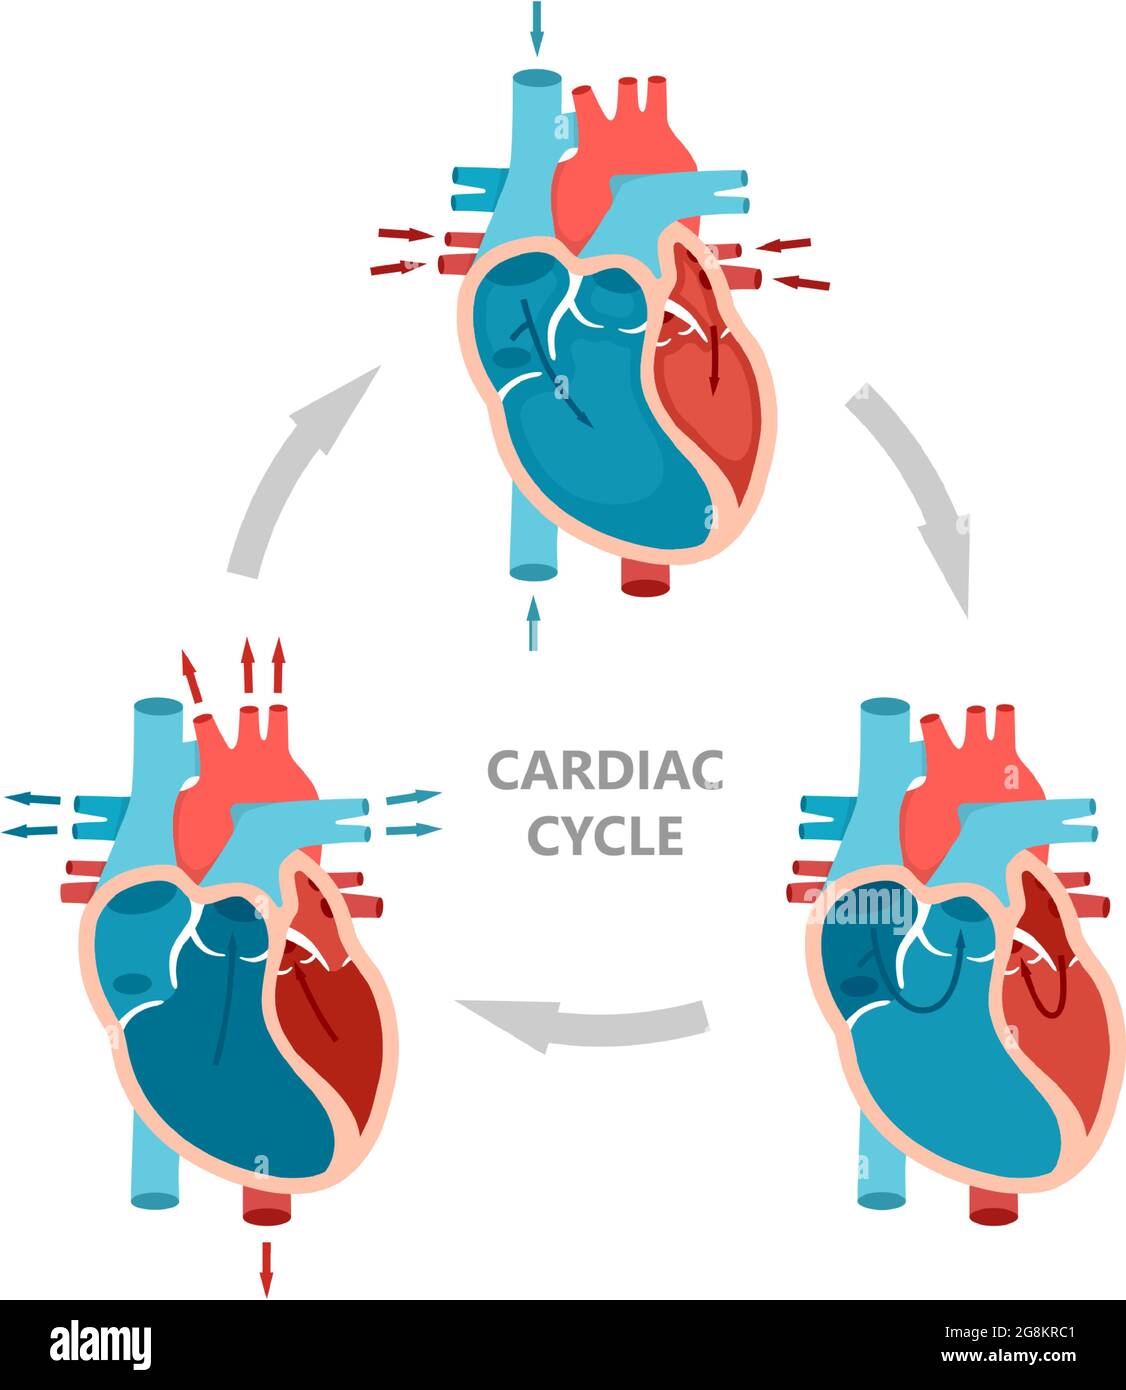 Fasi del ciclo cardiaco: Diastole, sistole atriale e diastole atriale.  Diagramma anatomico del cuore con flusso sanguigno Immagine e Vettoriale -  Alamy